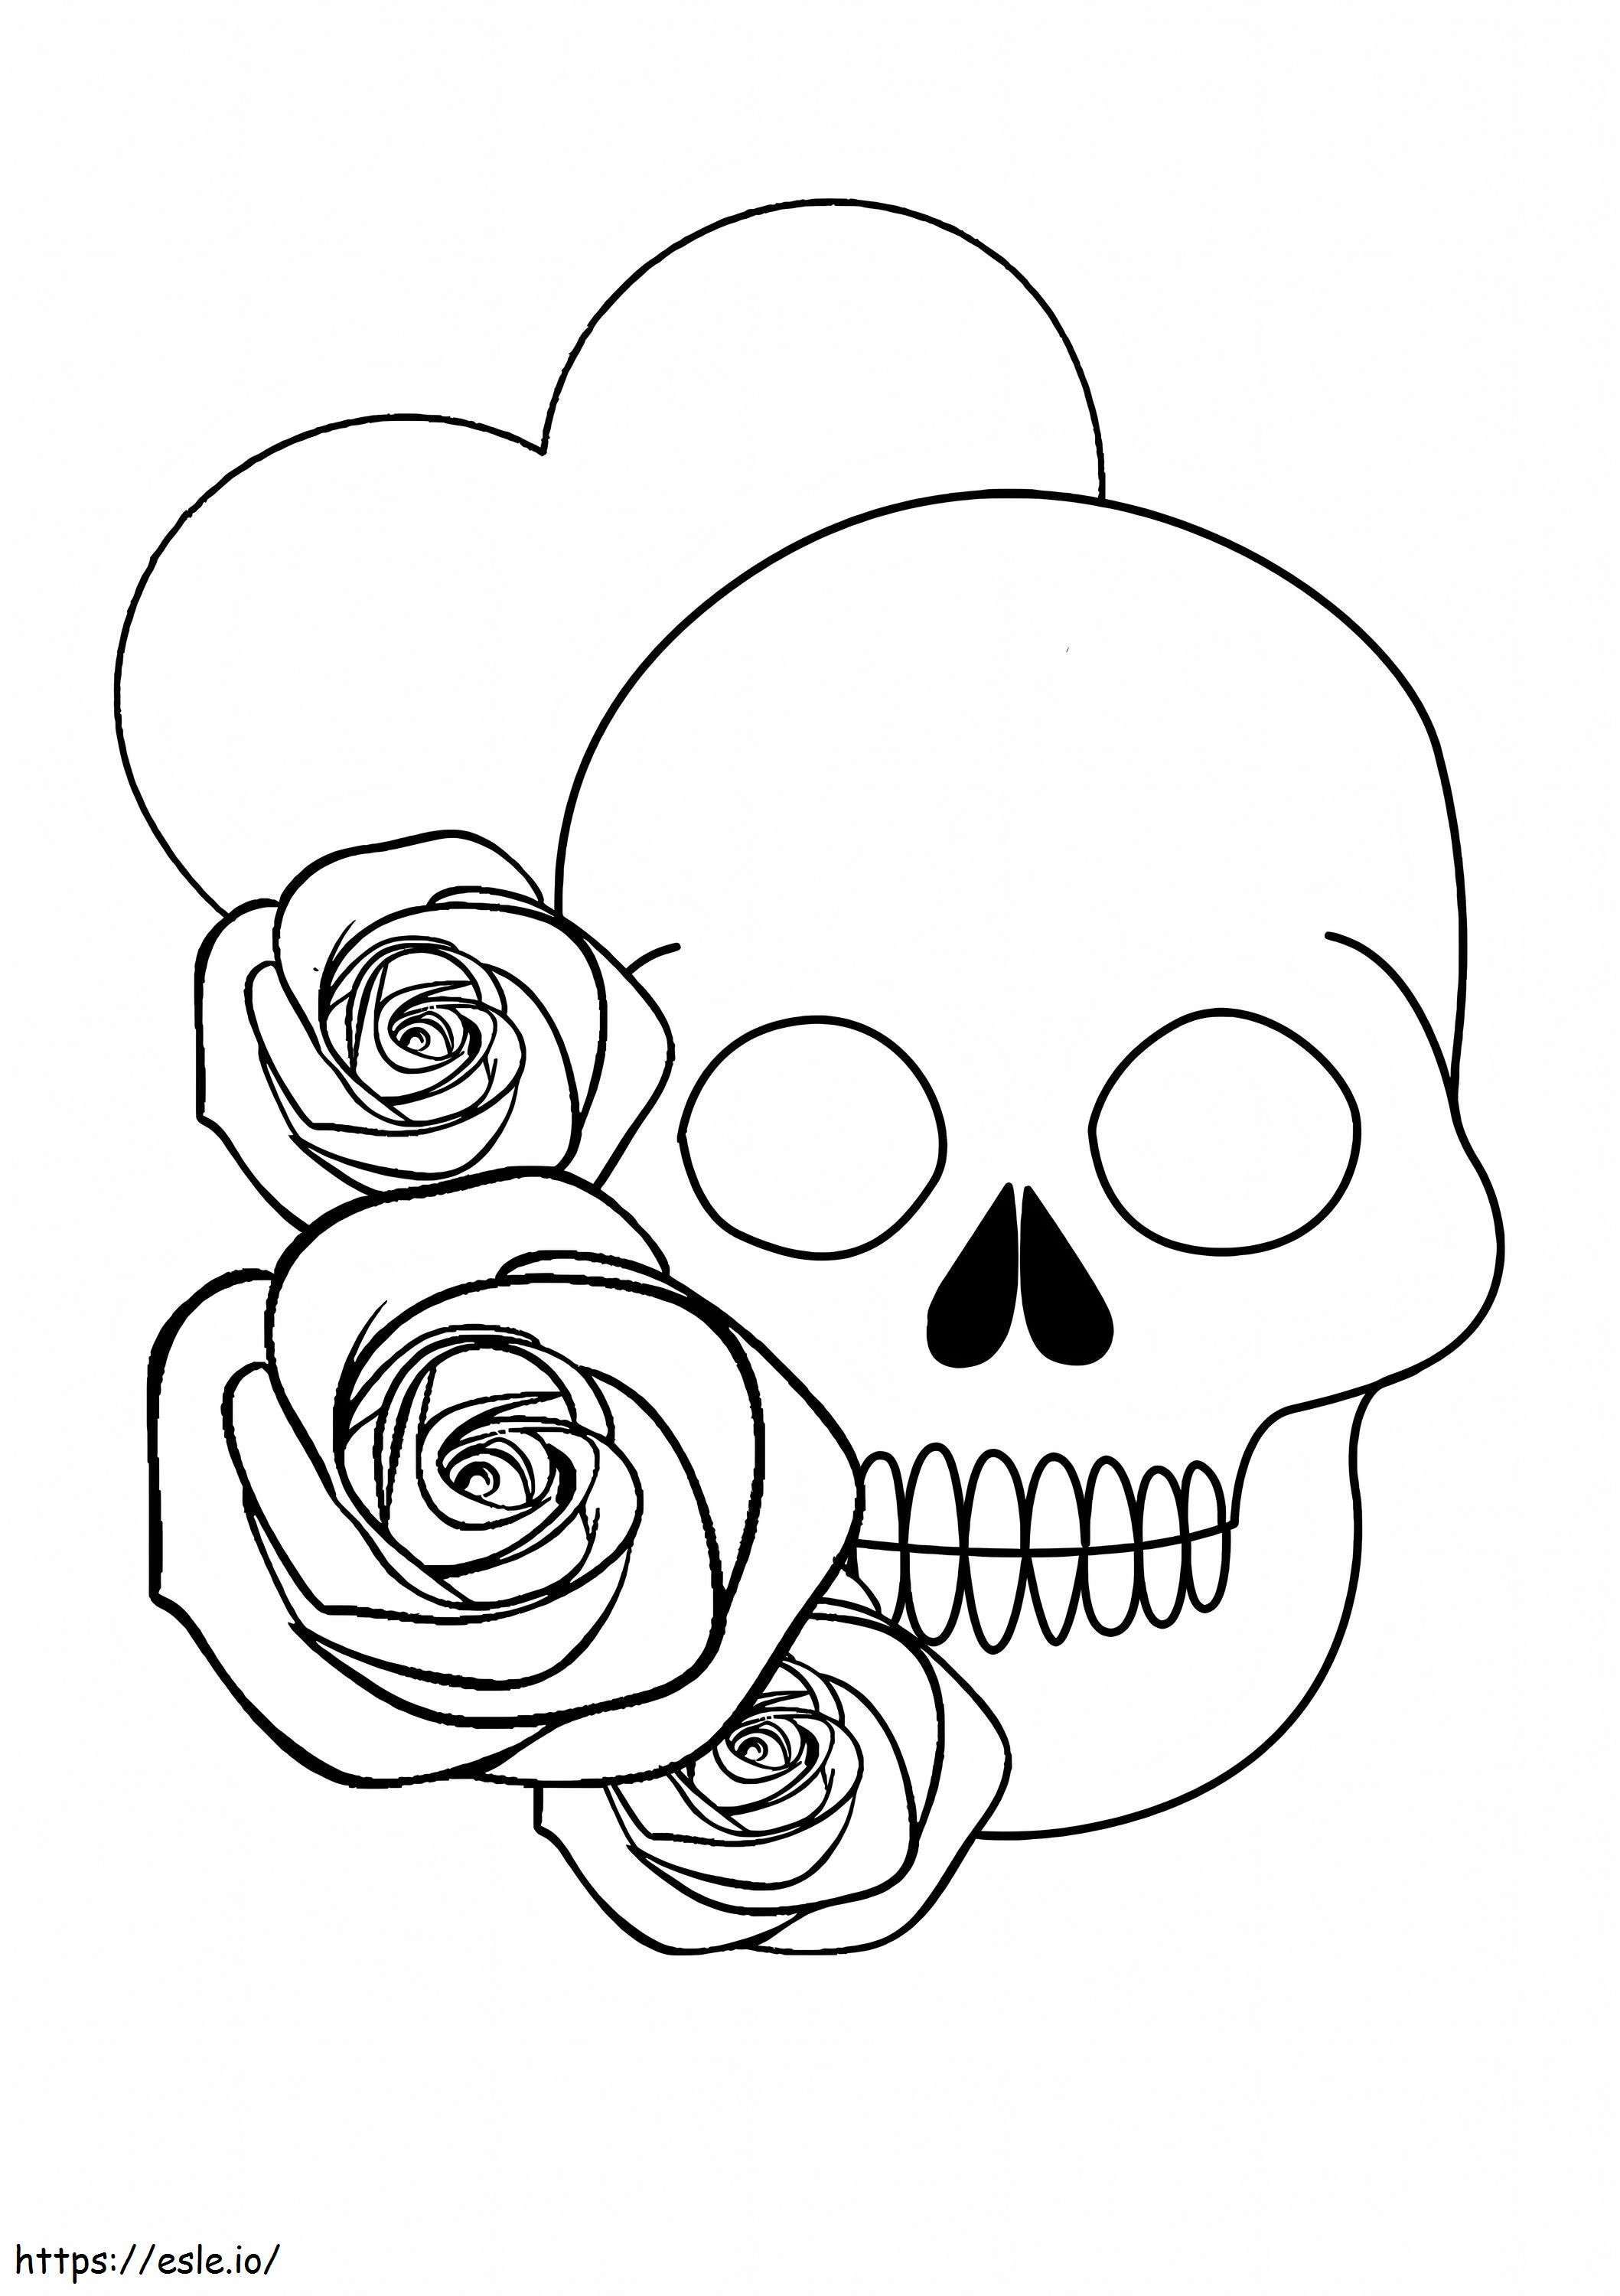 Totenkopf mit Herz und Rosen ausmalbilder